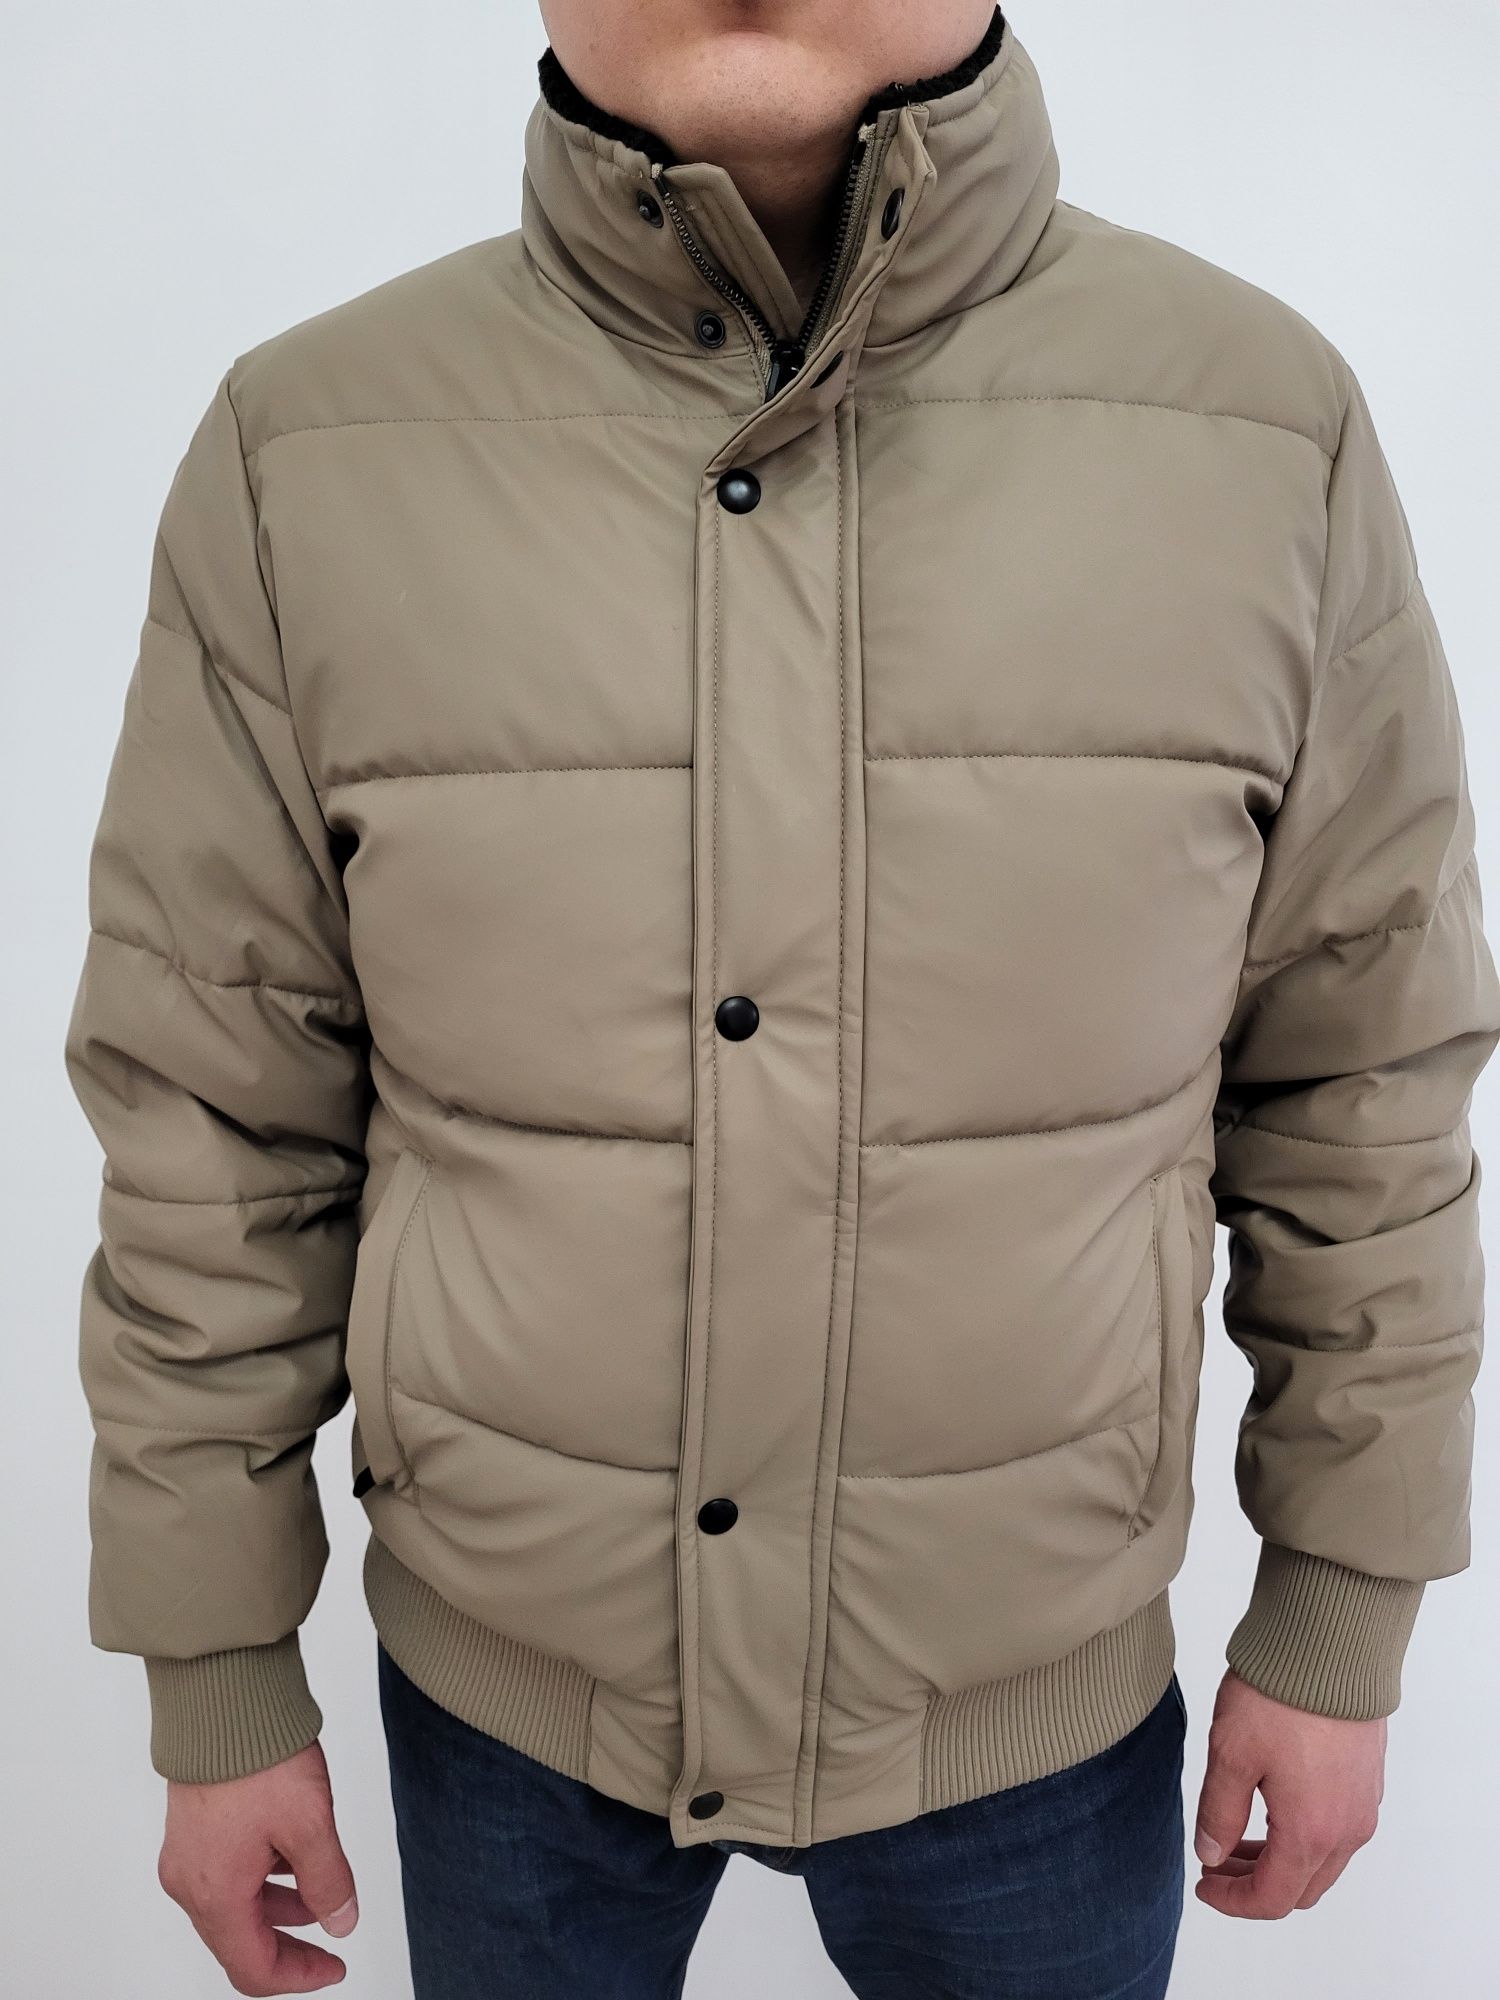 Турецкая мужская куртка 46-48 размера